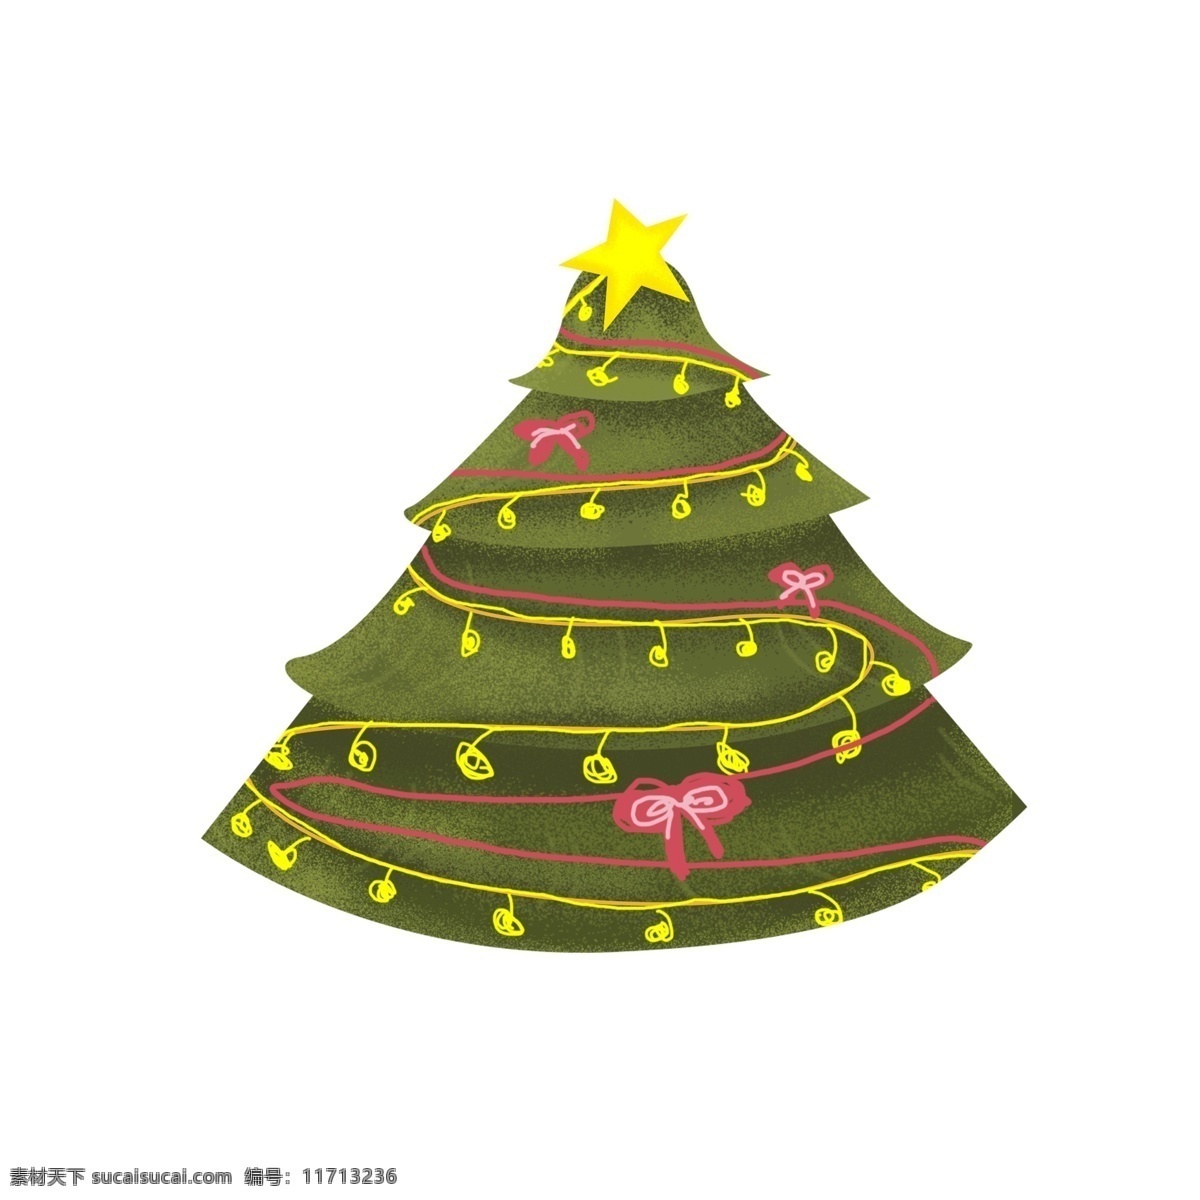 小 清新 圣诞节 圣诞 圣诞树 元素 小清新 绿色 插画 星星 植物 简约 节日元素